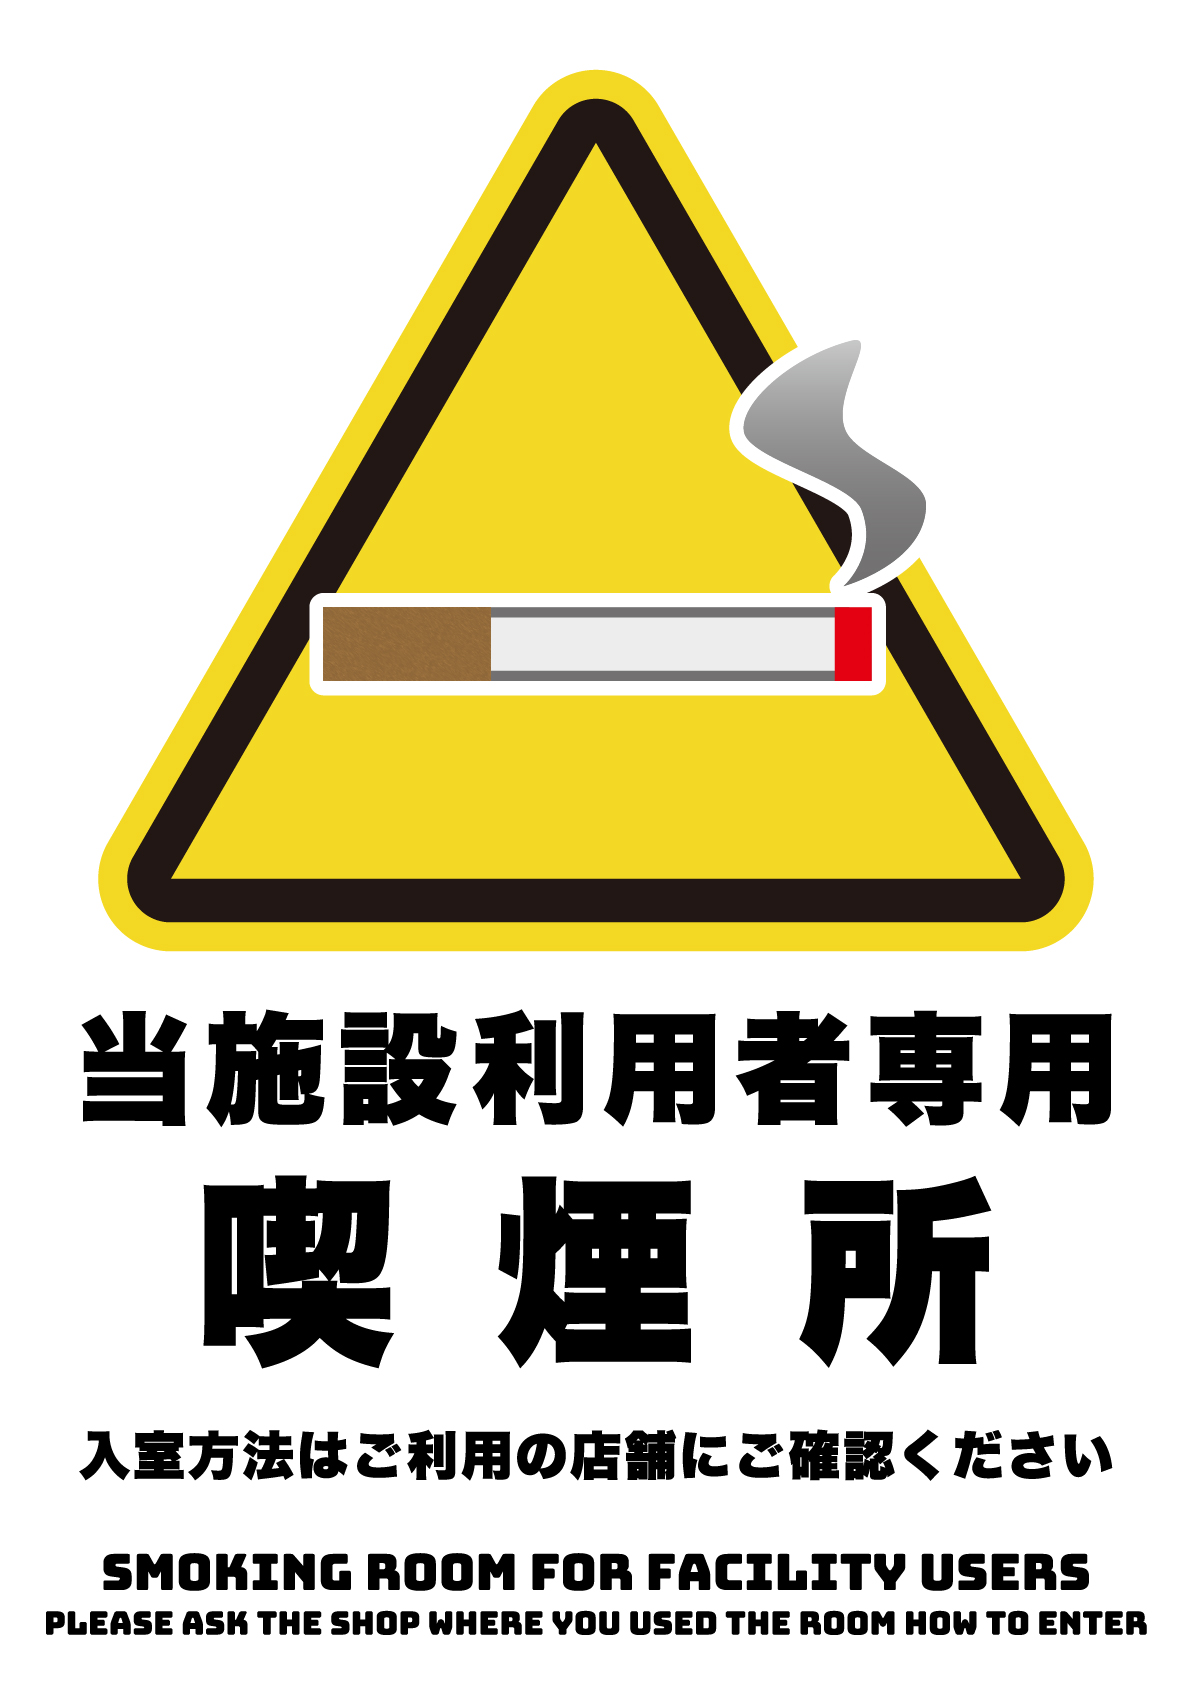 施設利用者向けの喫煙所の張り紙